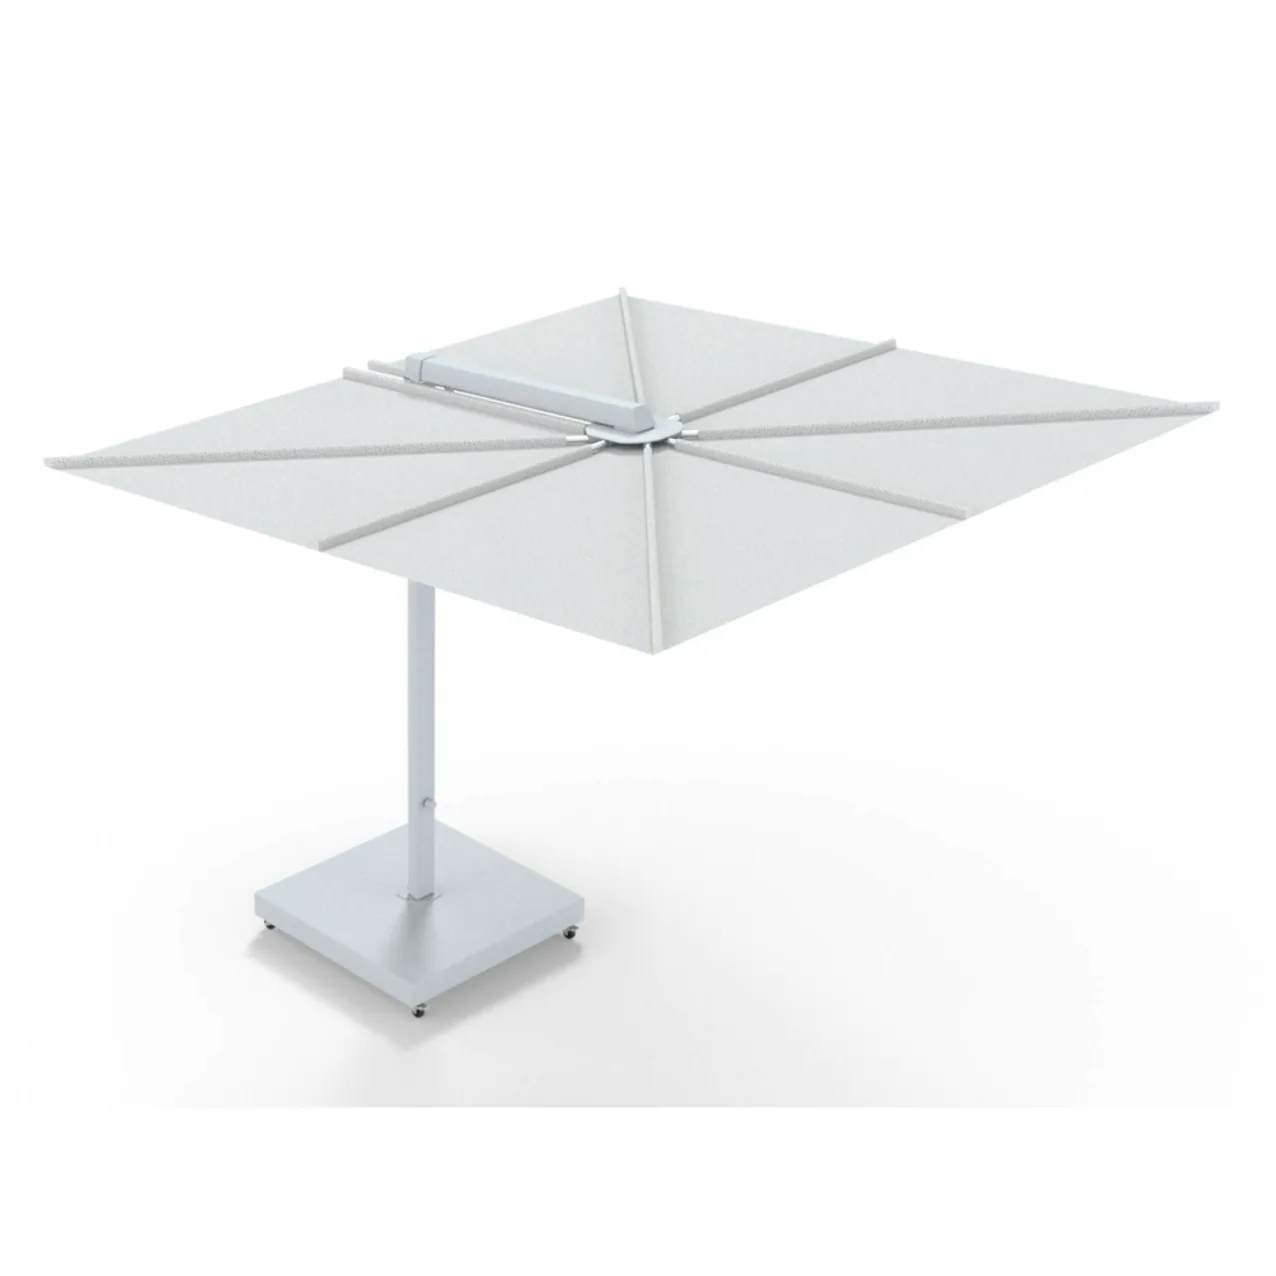 Umbrosa Nano UX Cantilever Umbrella | Architecture